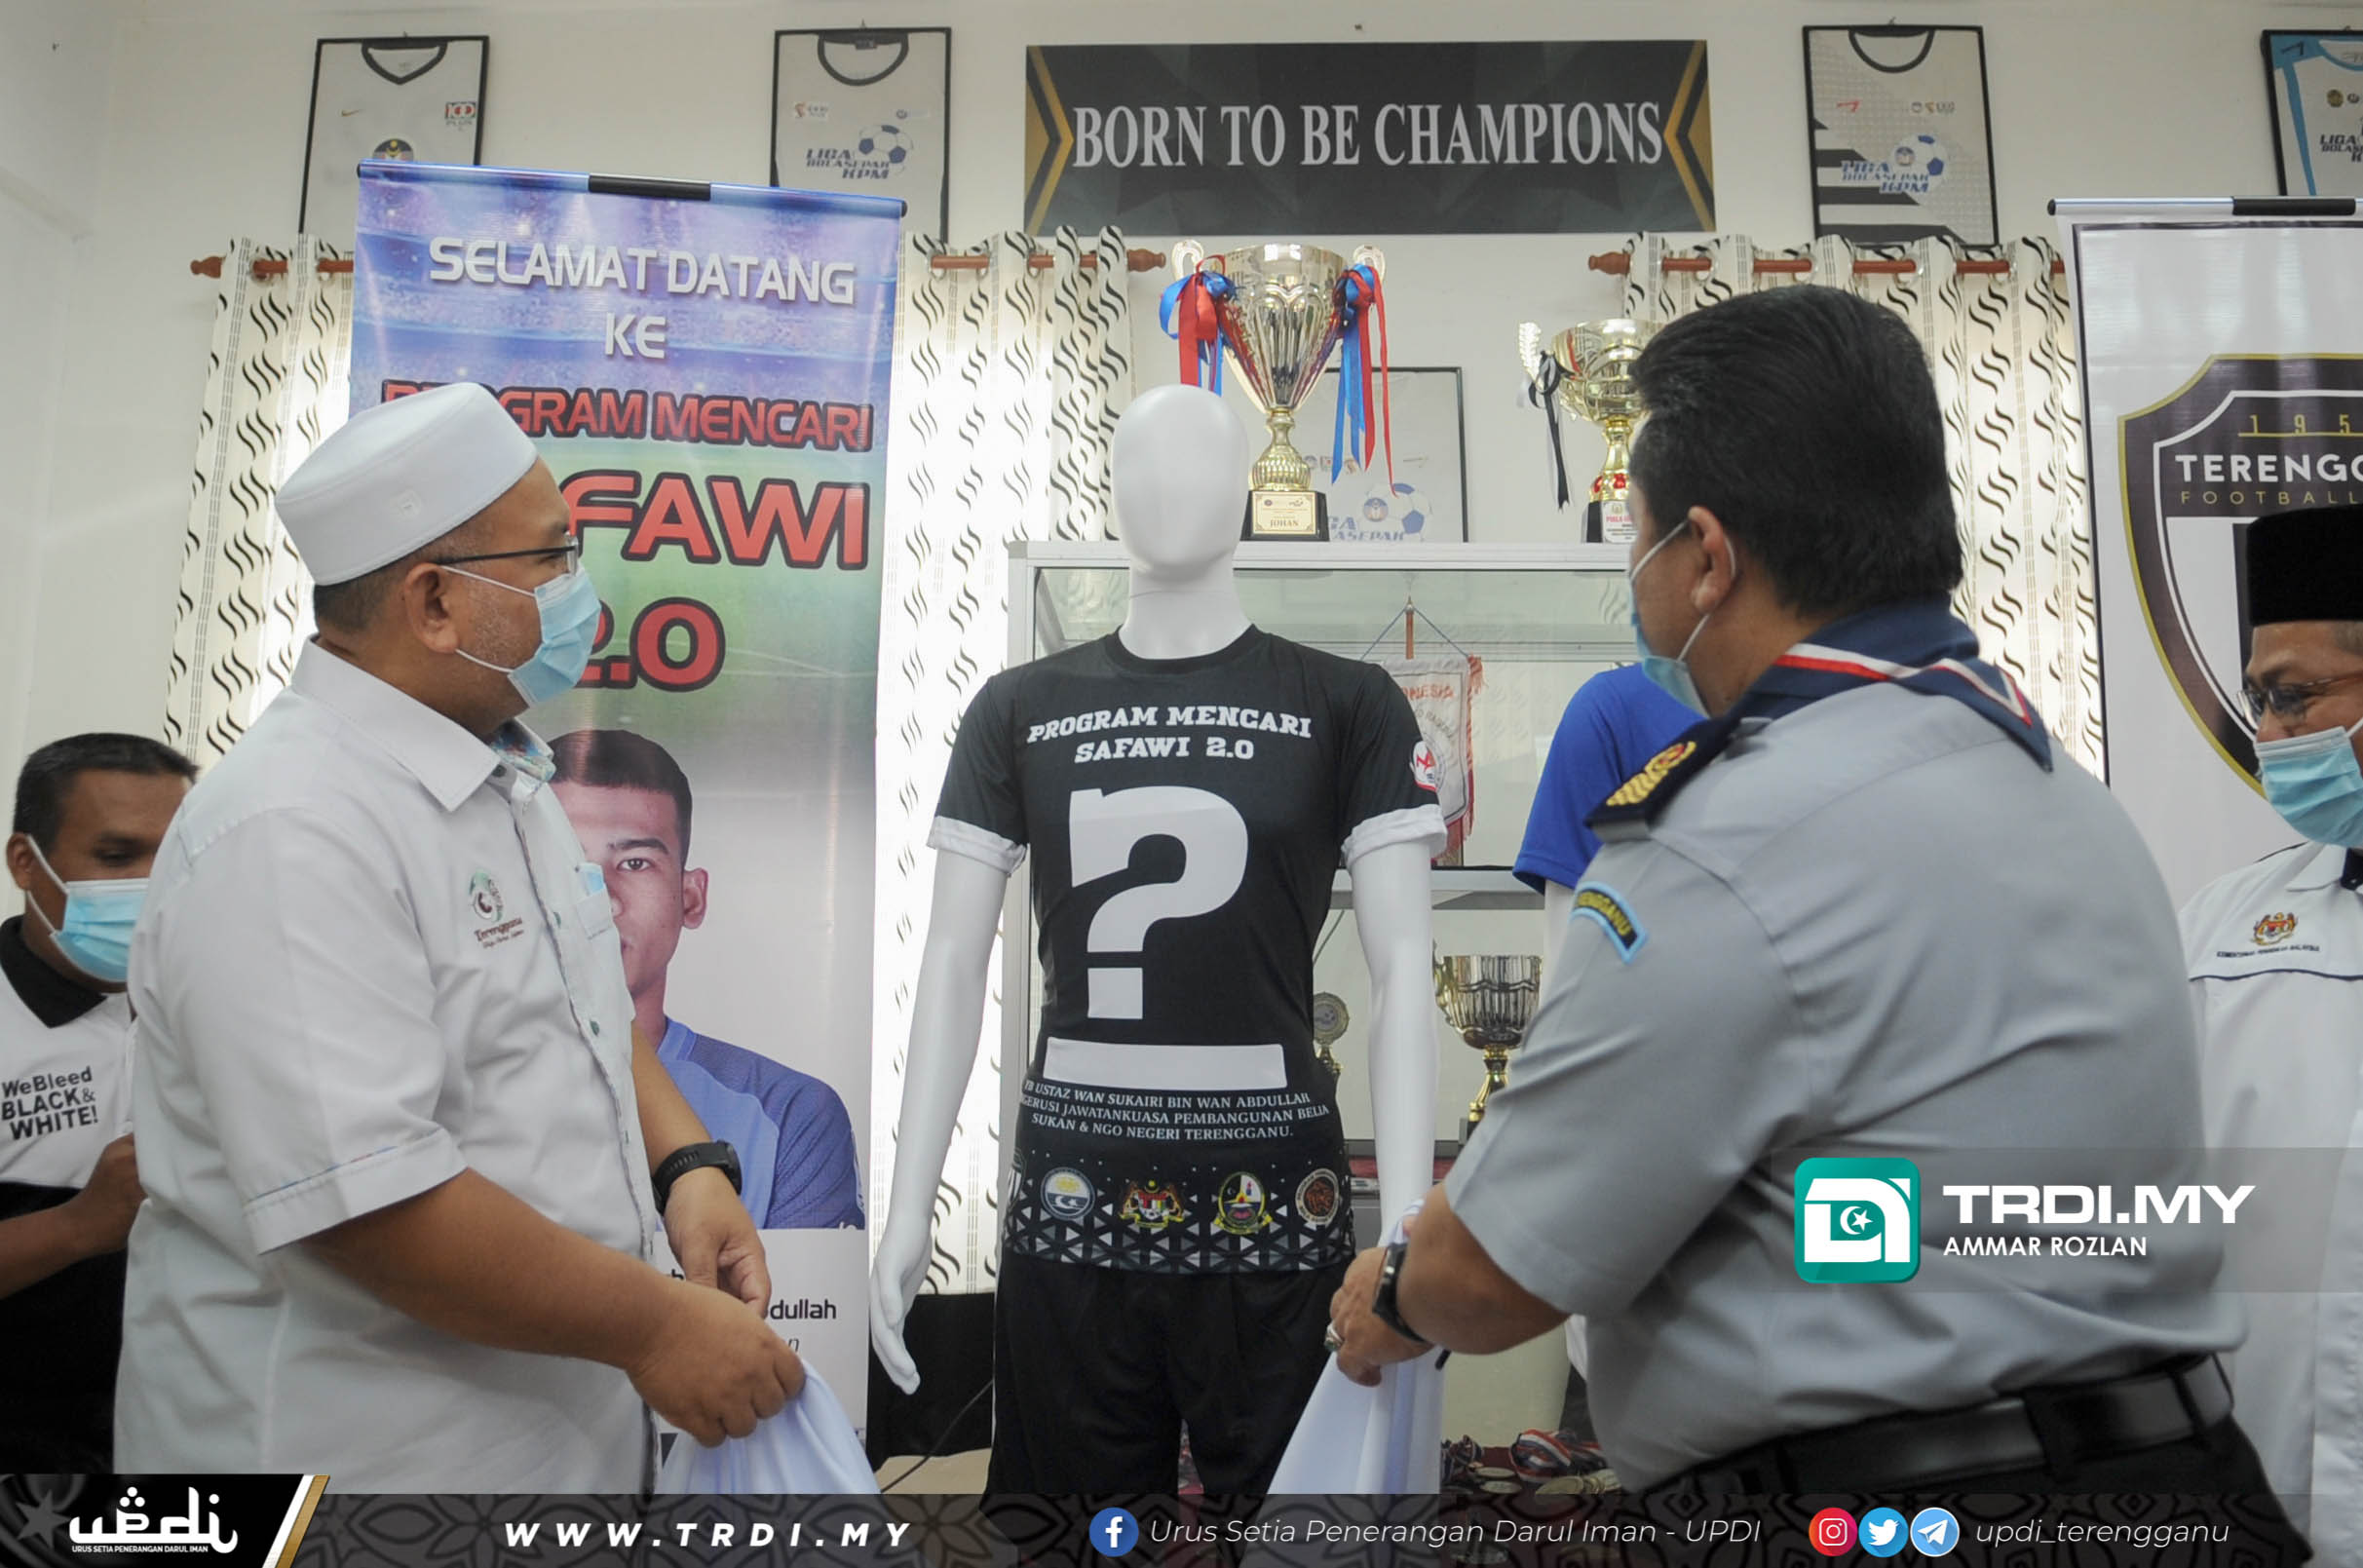 YB Ustaz Wan Sukairi Wan Abdullah menghadiri Program Mencari Safawi 2.0 & Pembentangan SMK Bukit Nanas  Sebagai Pusat Latihan SUKMA